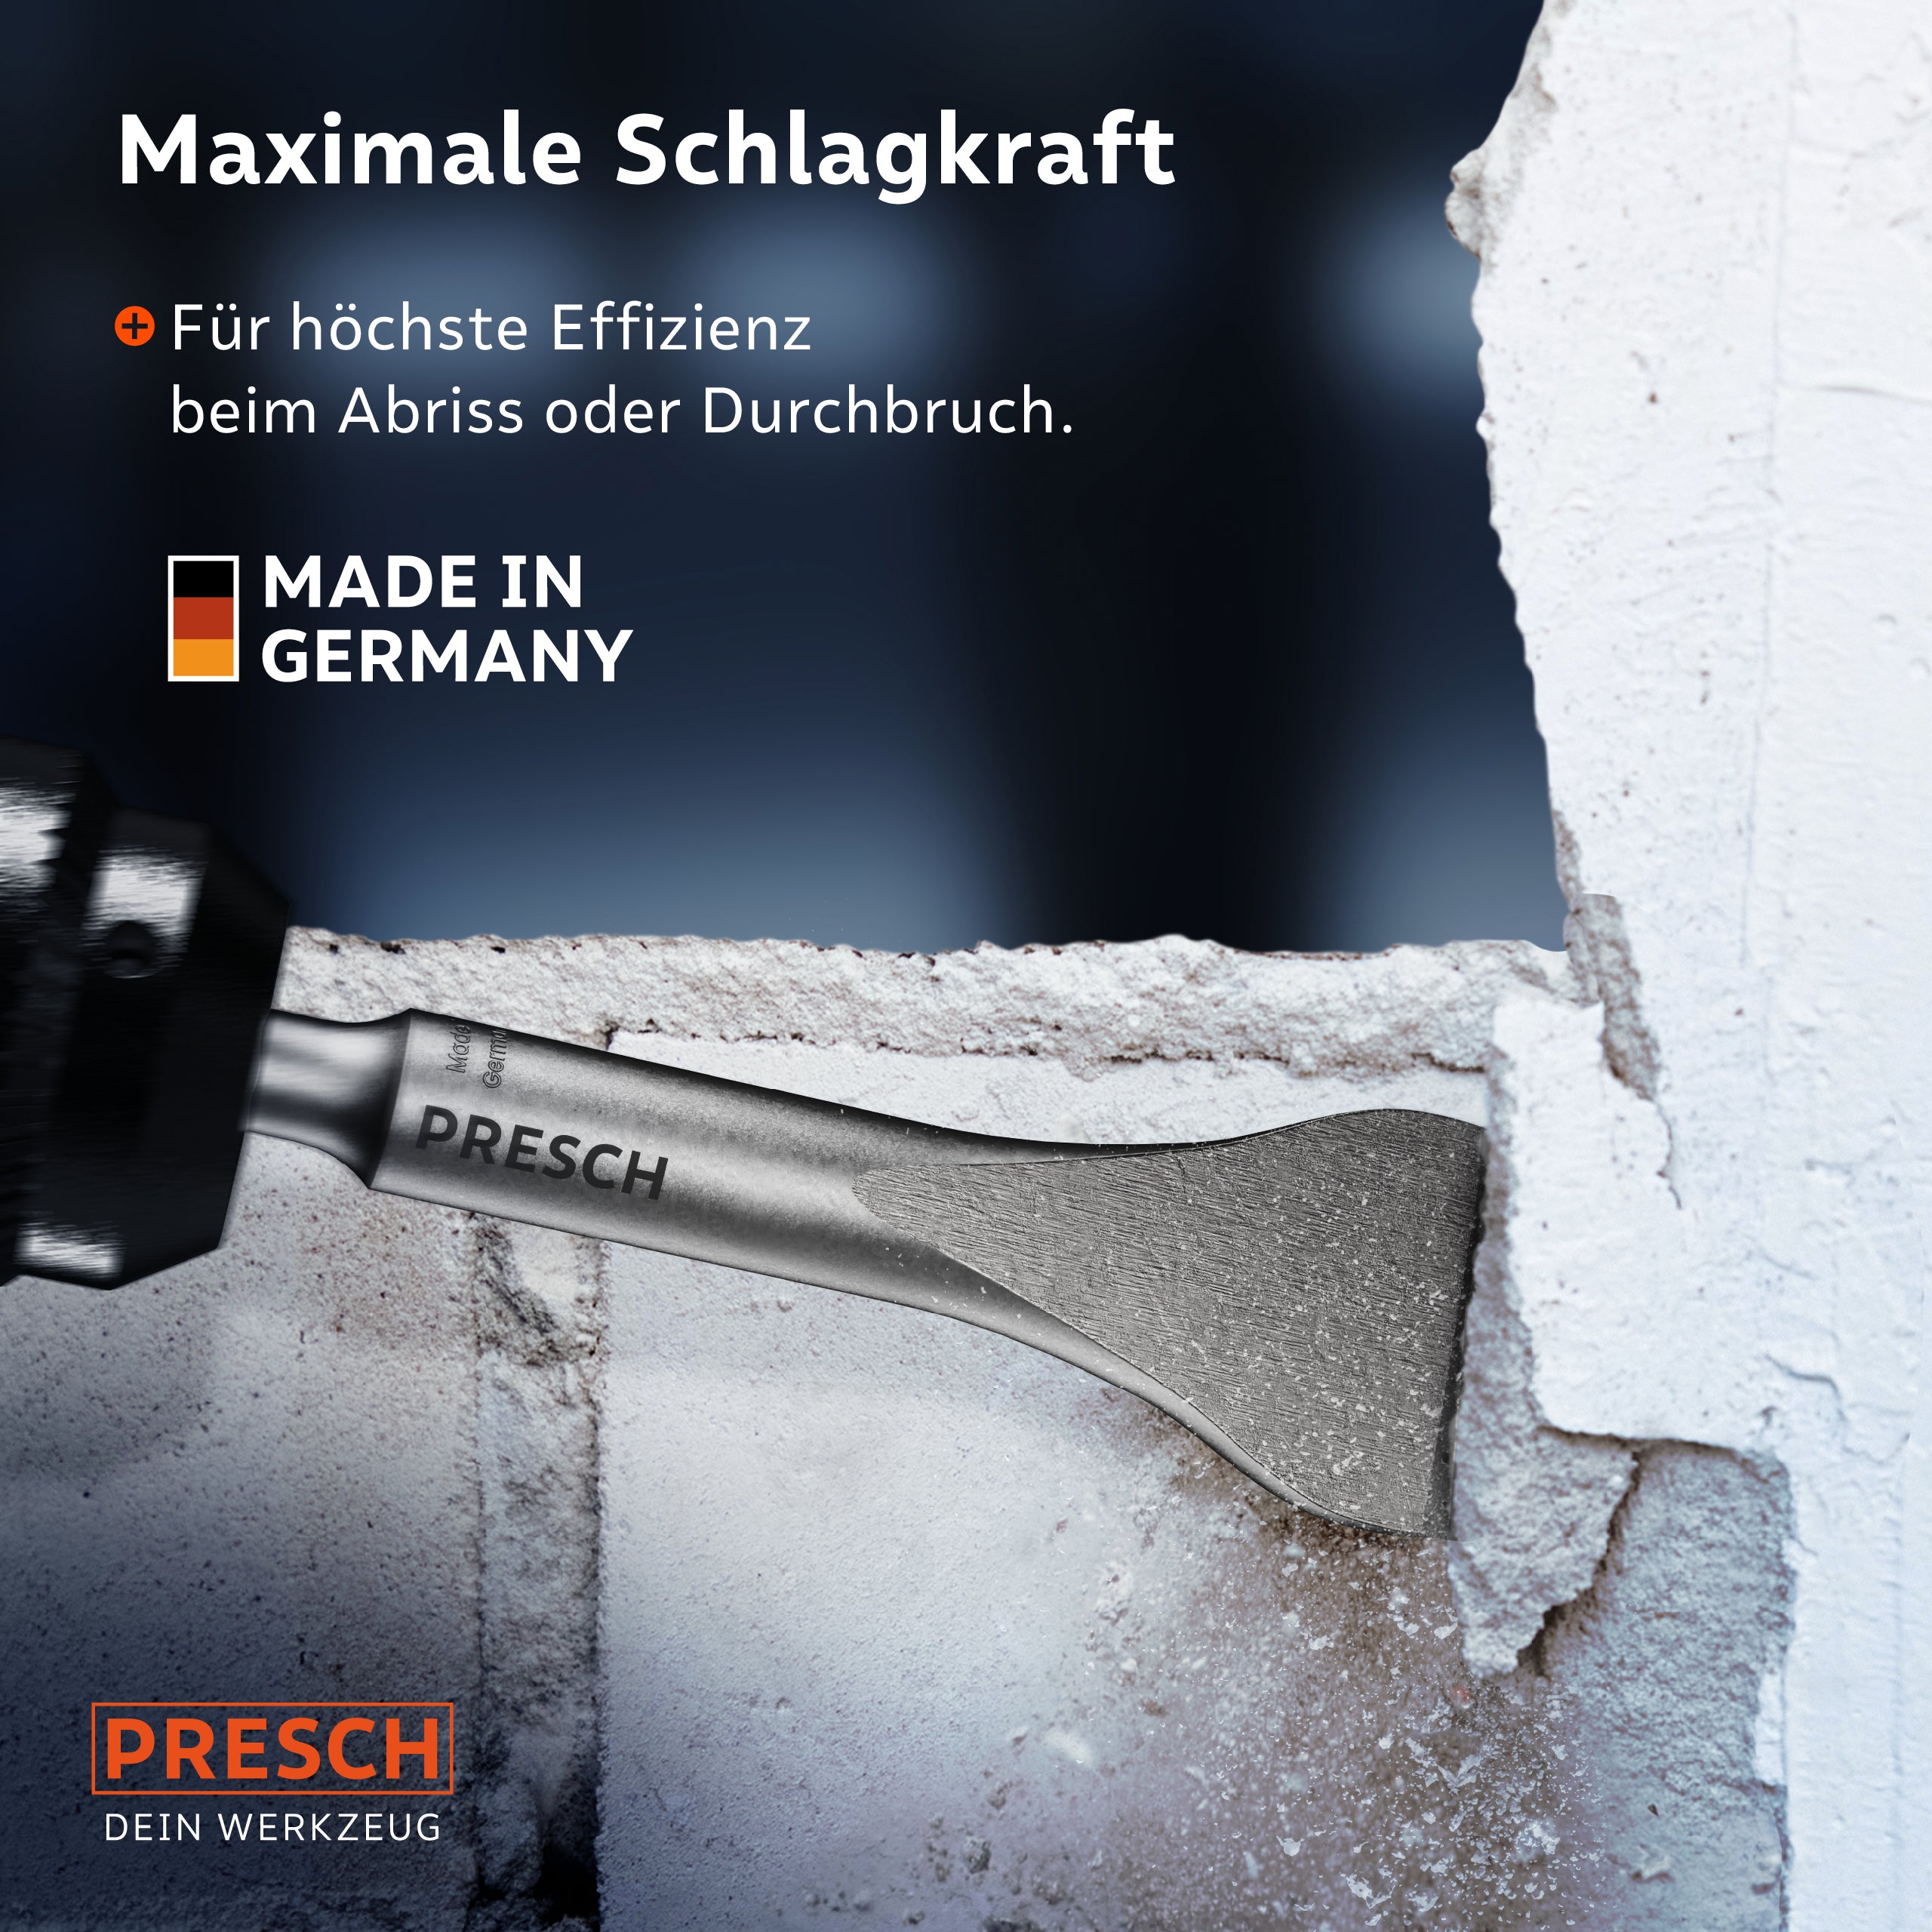 PRESCH Meißelwerkzeug mit maximaler Schlagkraft für Effizienz bei Abrissarbeiten, Qualitätsprodukt Made in Germany.